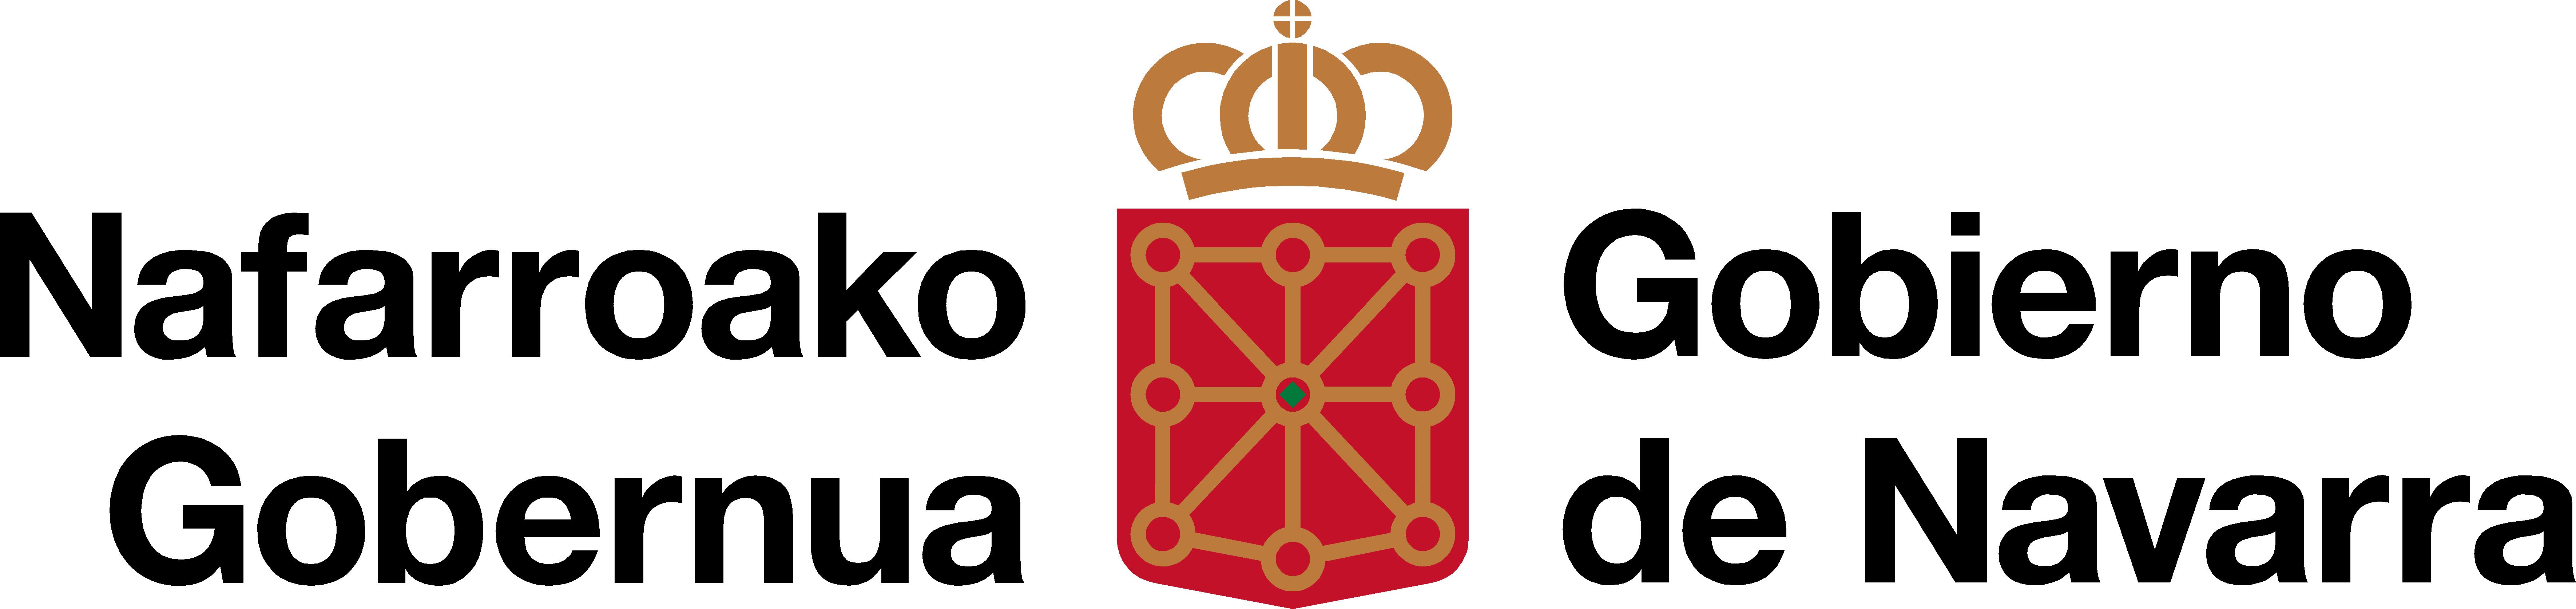 Government of Navarra - Euskarabidea